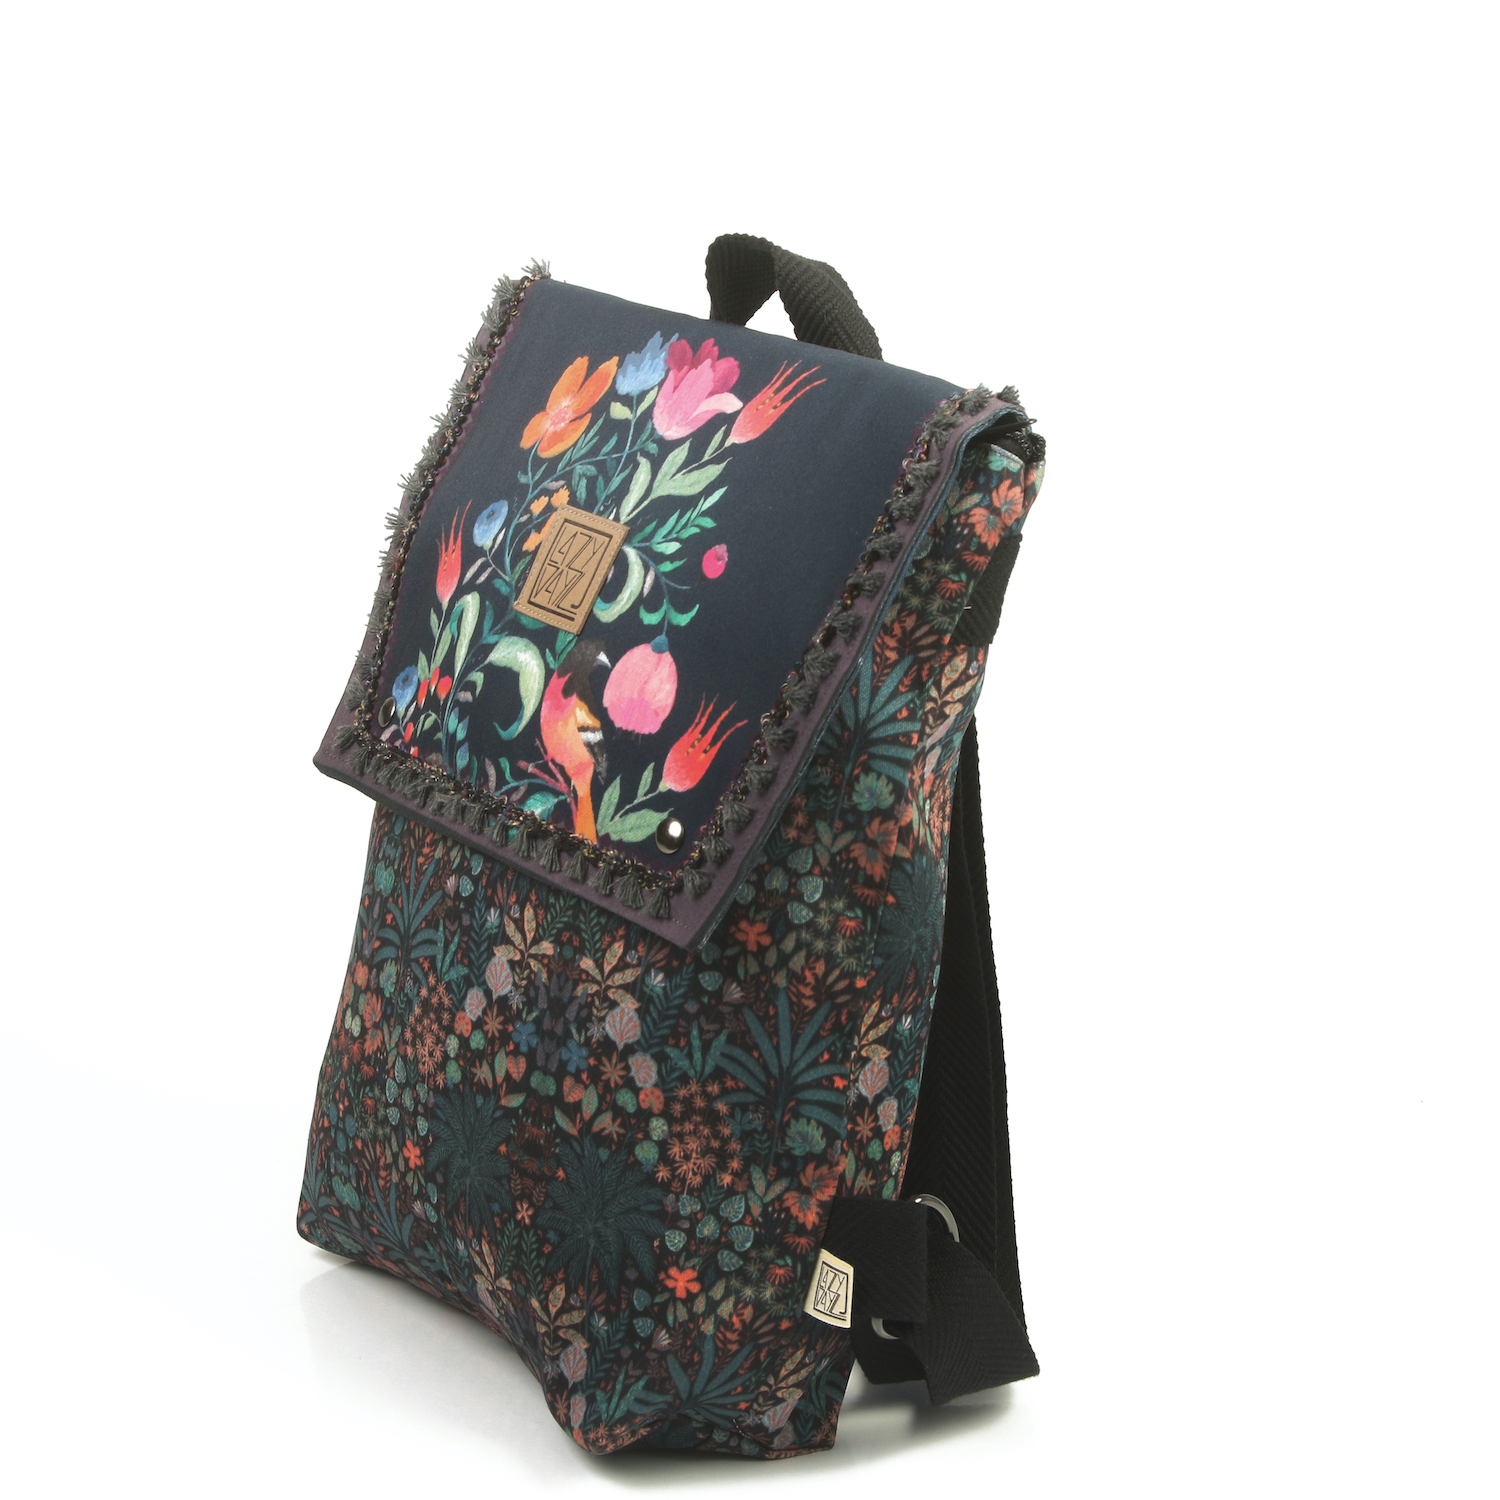 LazyDayz Designs Backpack γυναικείος σάκος πλάτης χειροποίητος bb0702b